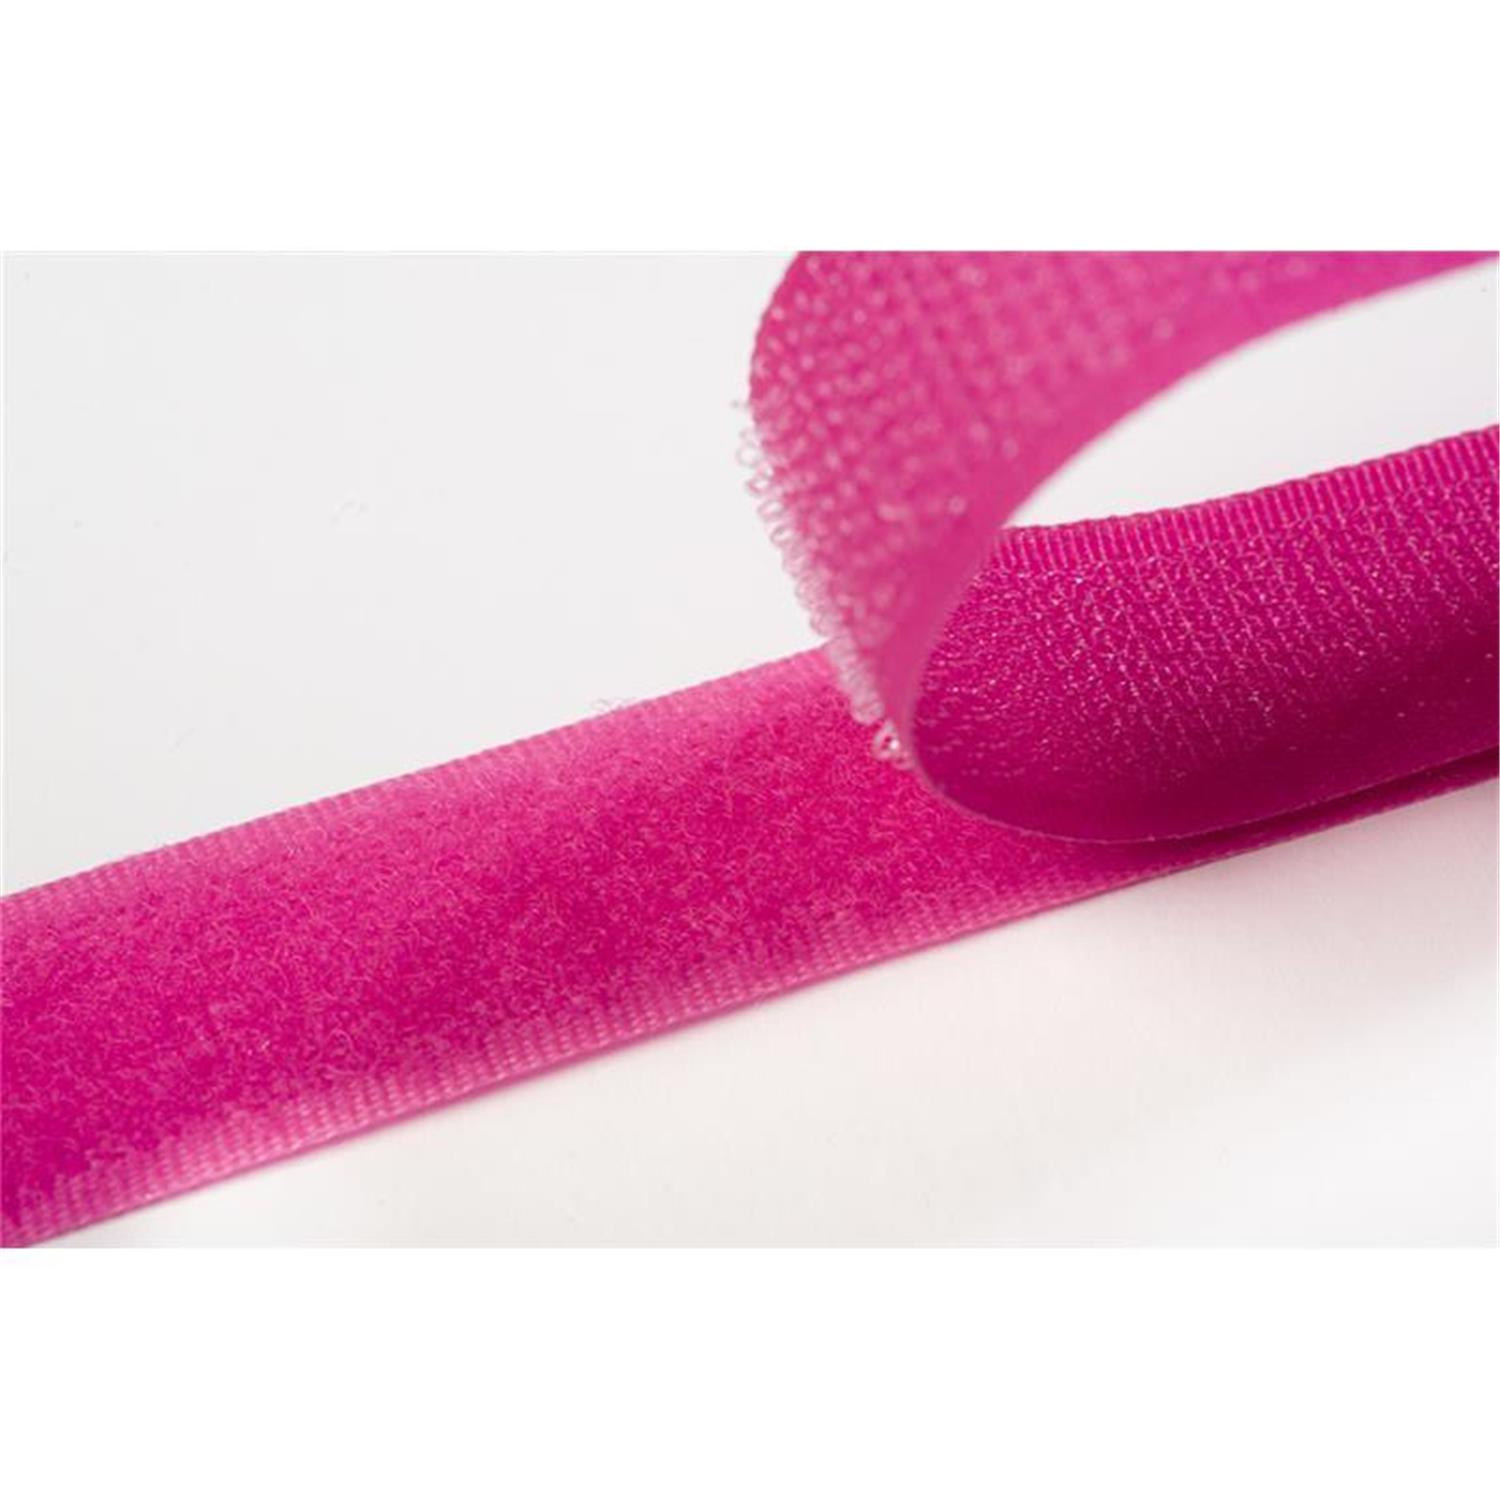 Klettband zum aufnähen, 20 mm, pink #09 25 Meter